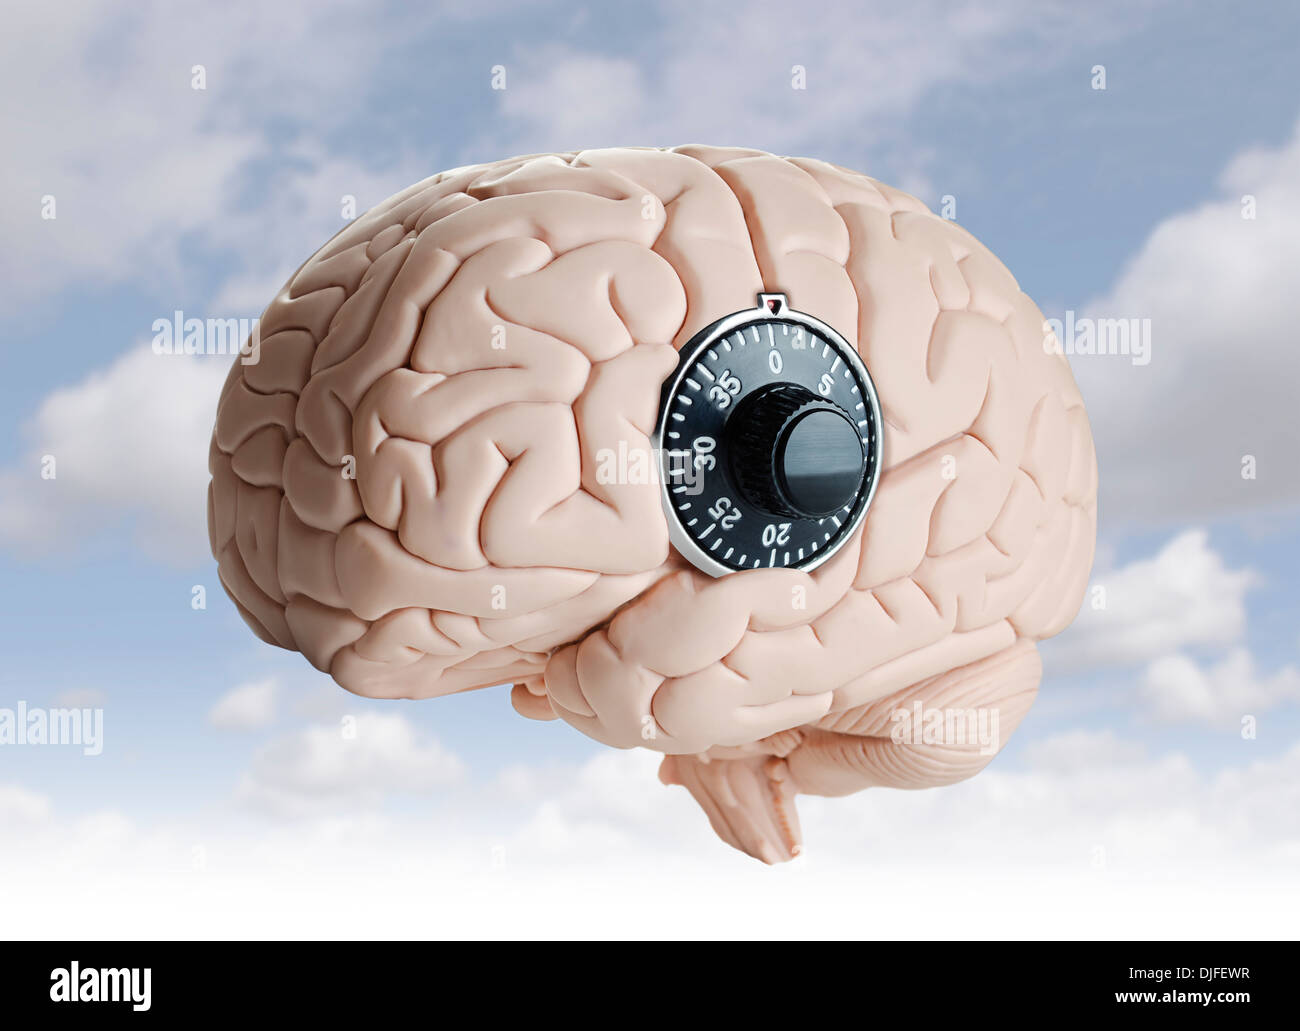 Cerveau humain modèle avec un cadran verrouillage Banque D'Images